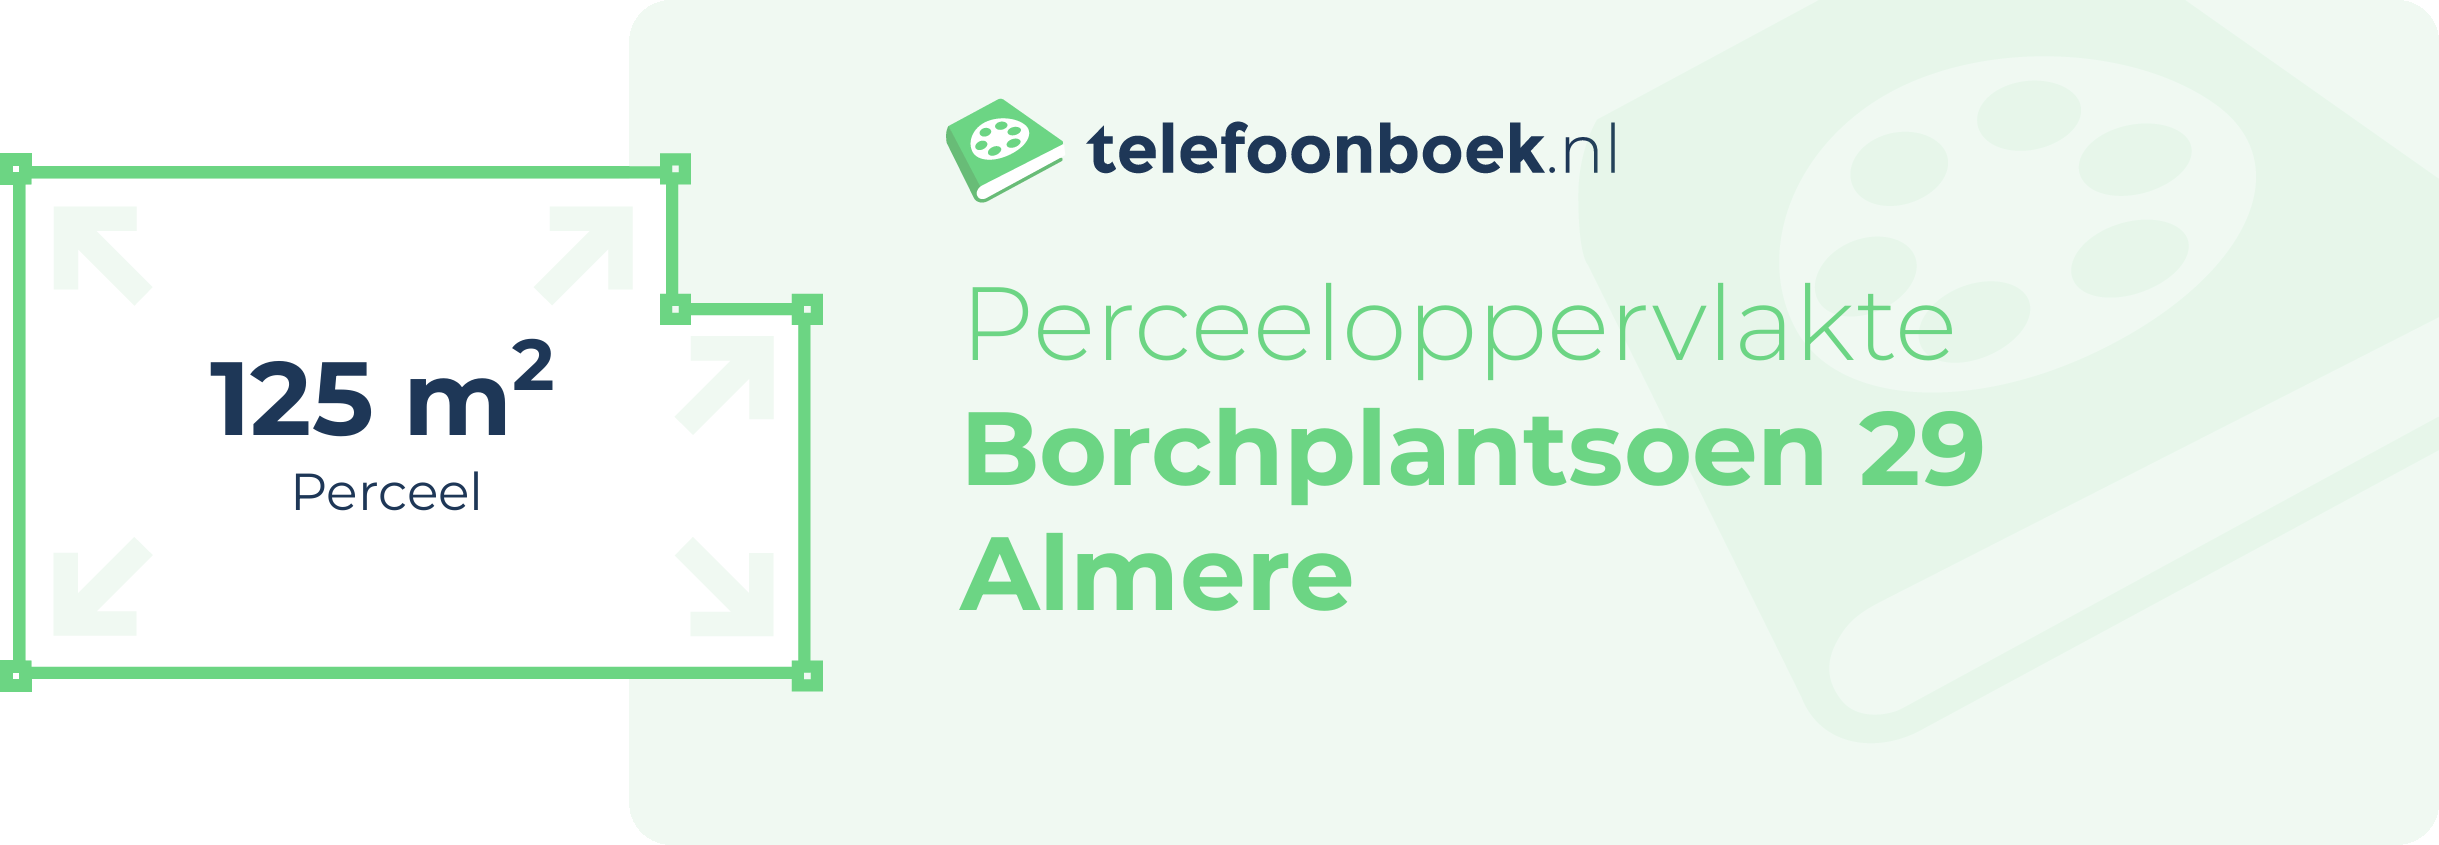 Perceeloppervlakte Borchplantsoen 29 Almere